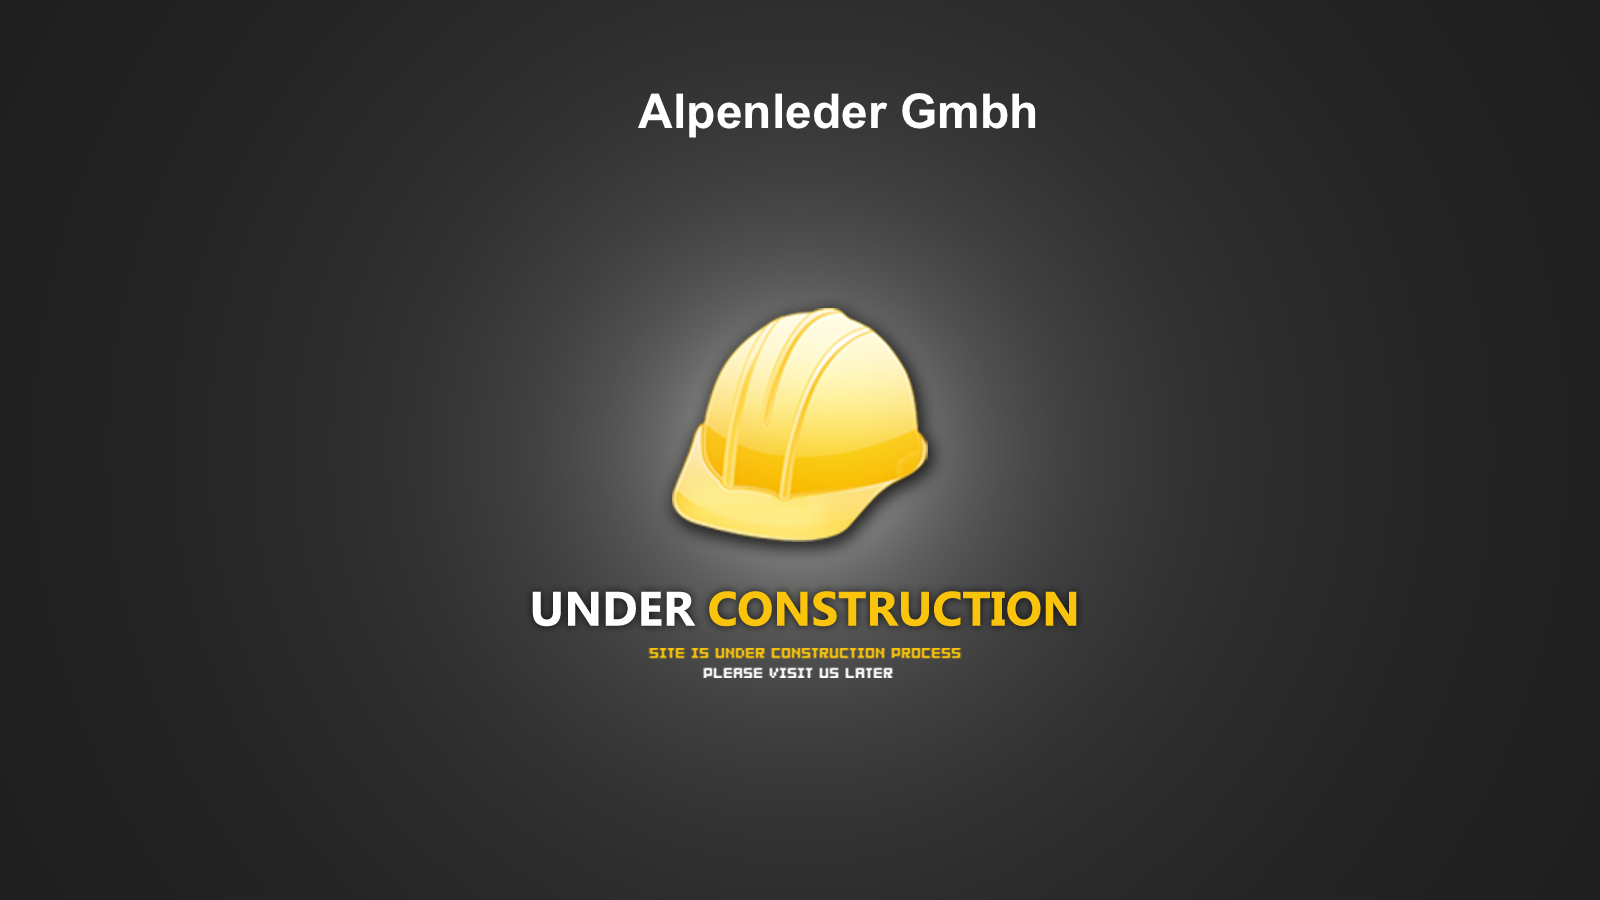 Alpenleder Gmbh -- site underconstruction